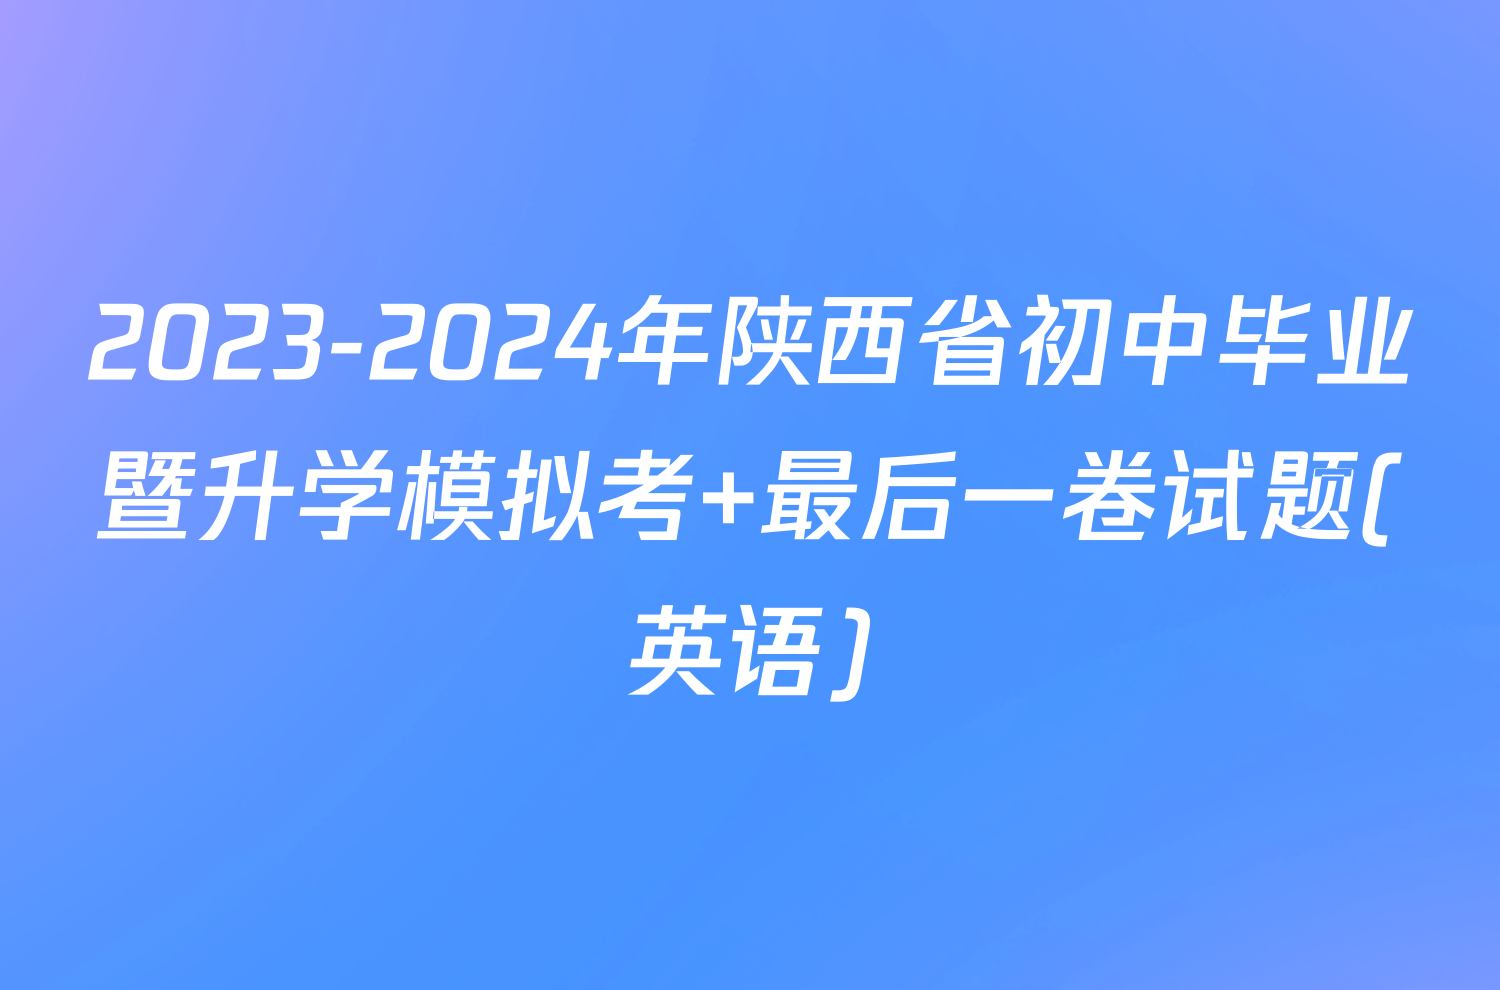 2023-2024年陕西省初中毕业暨升学模拟考 最后一卷试题(英语)